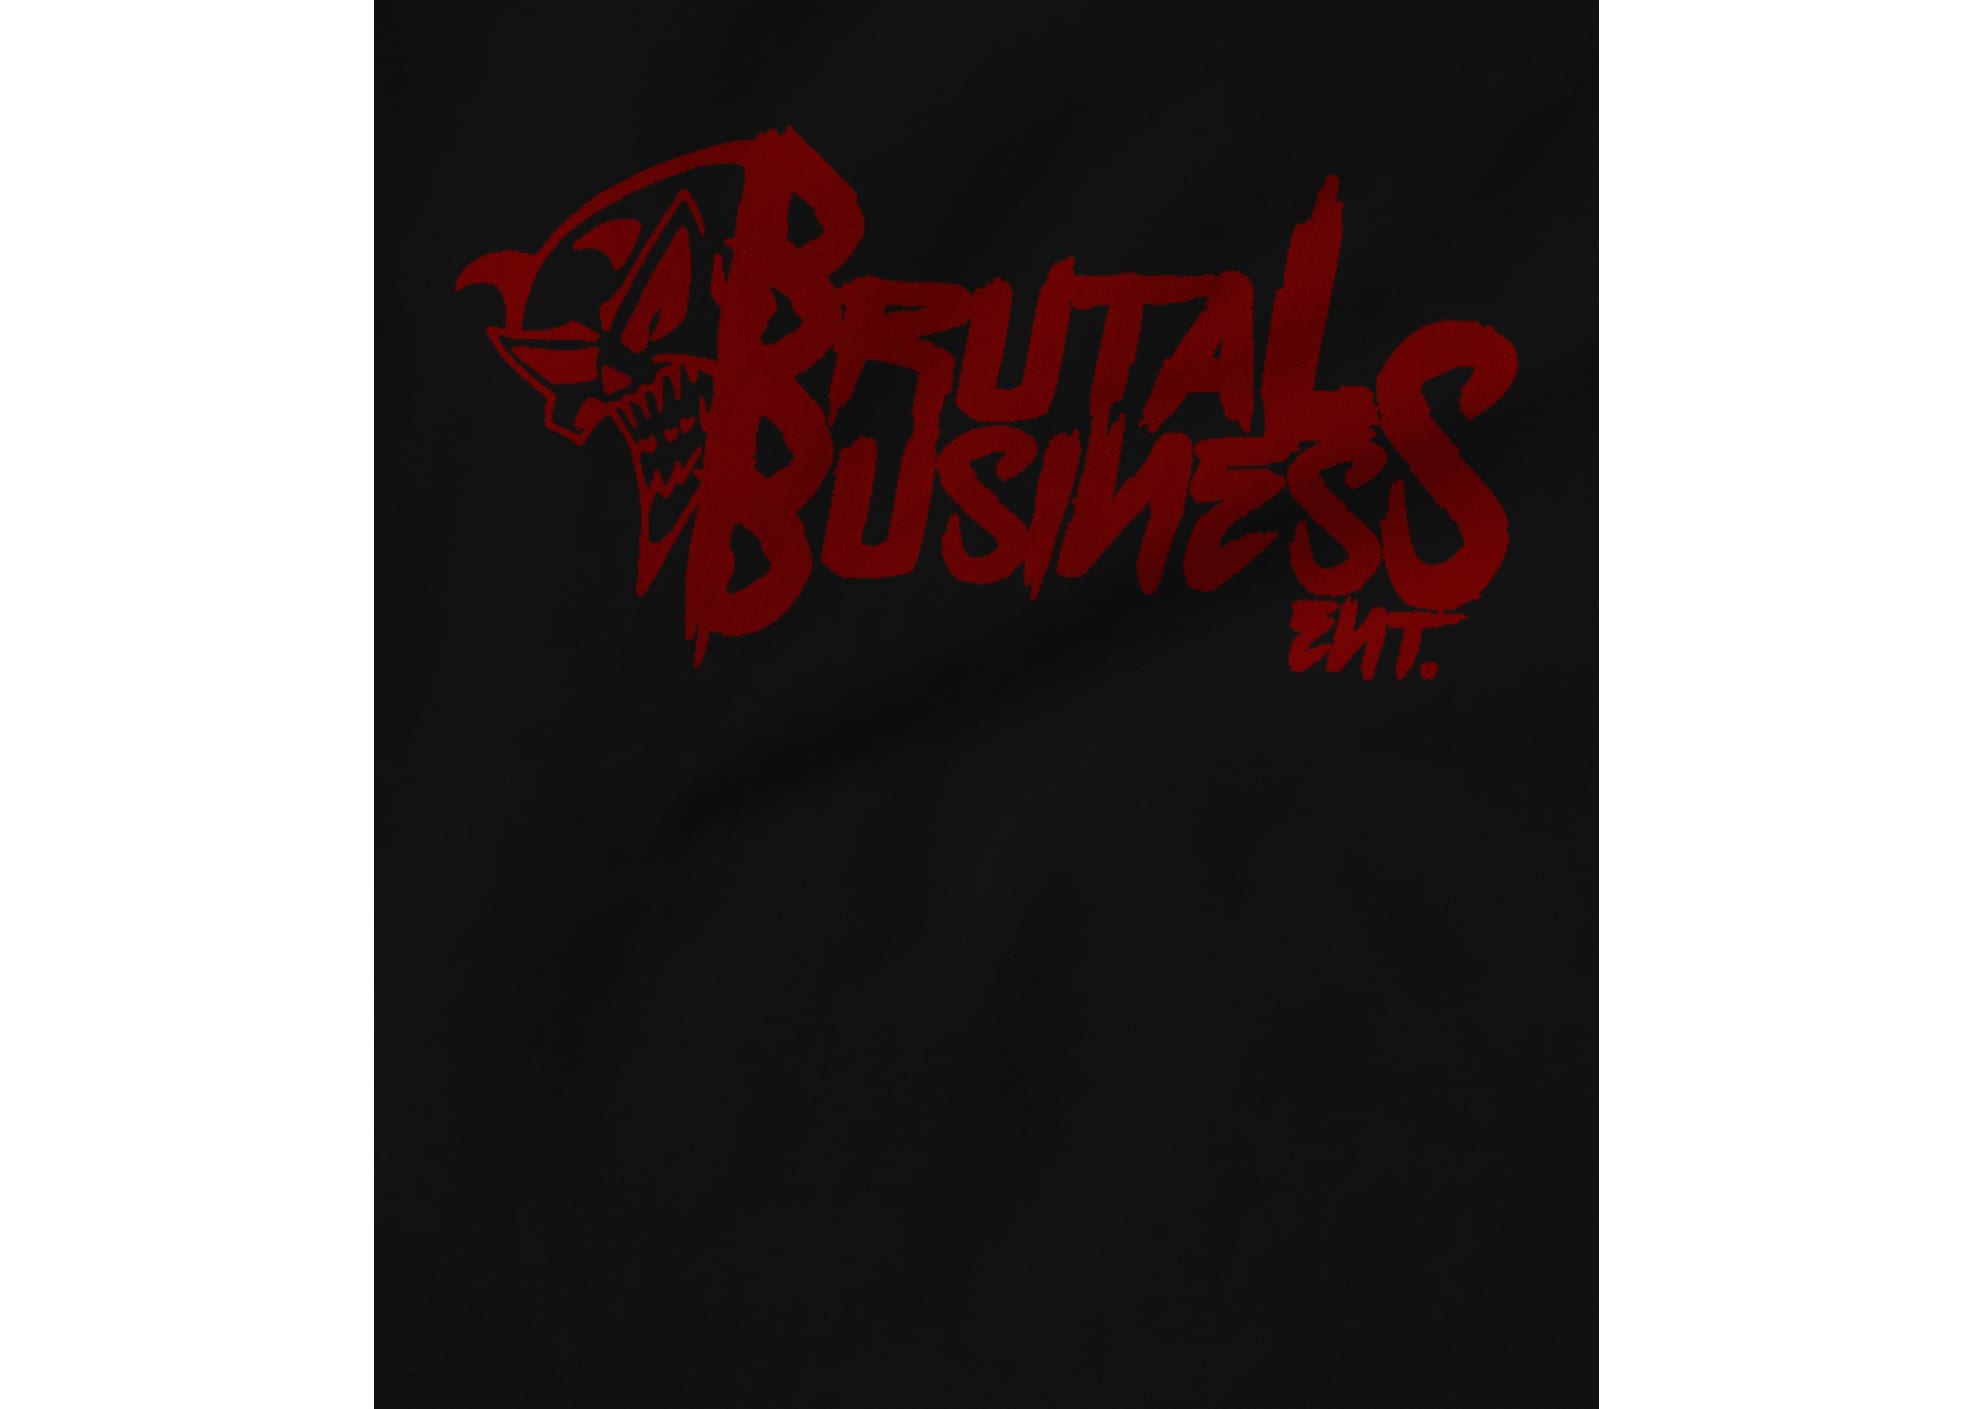 Brutal business ent brutal business  black  1595802887